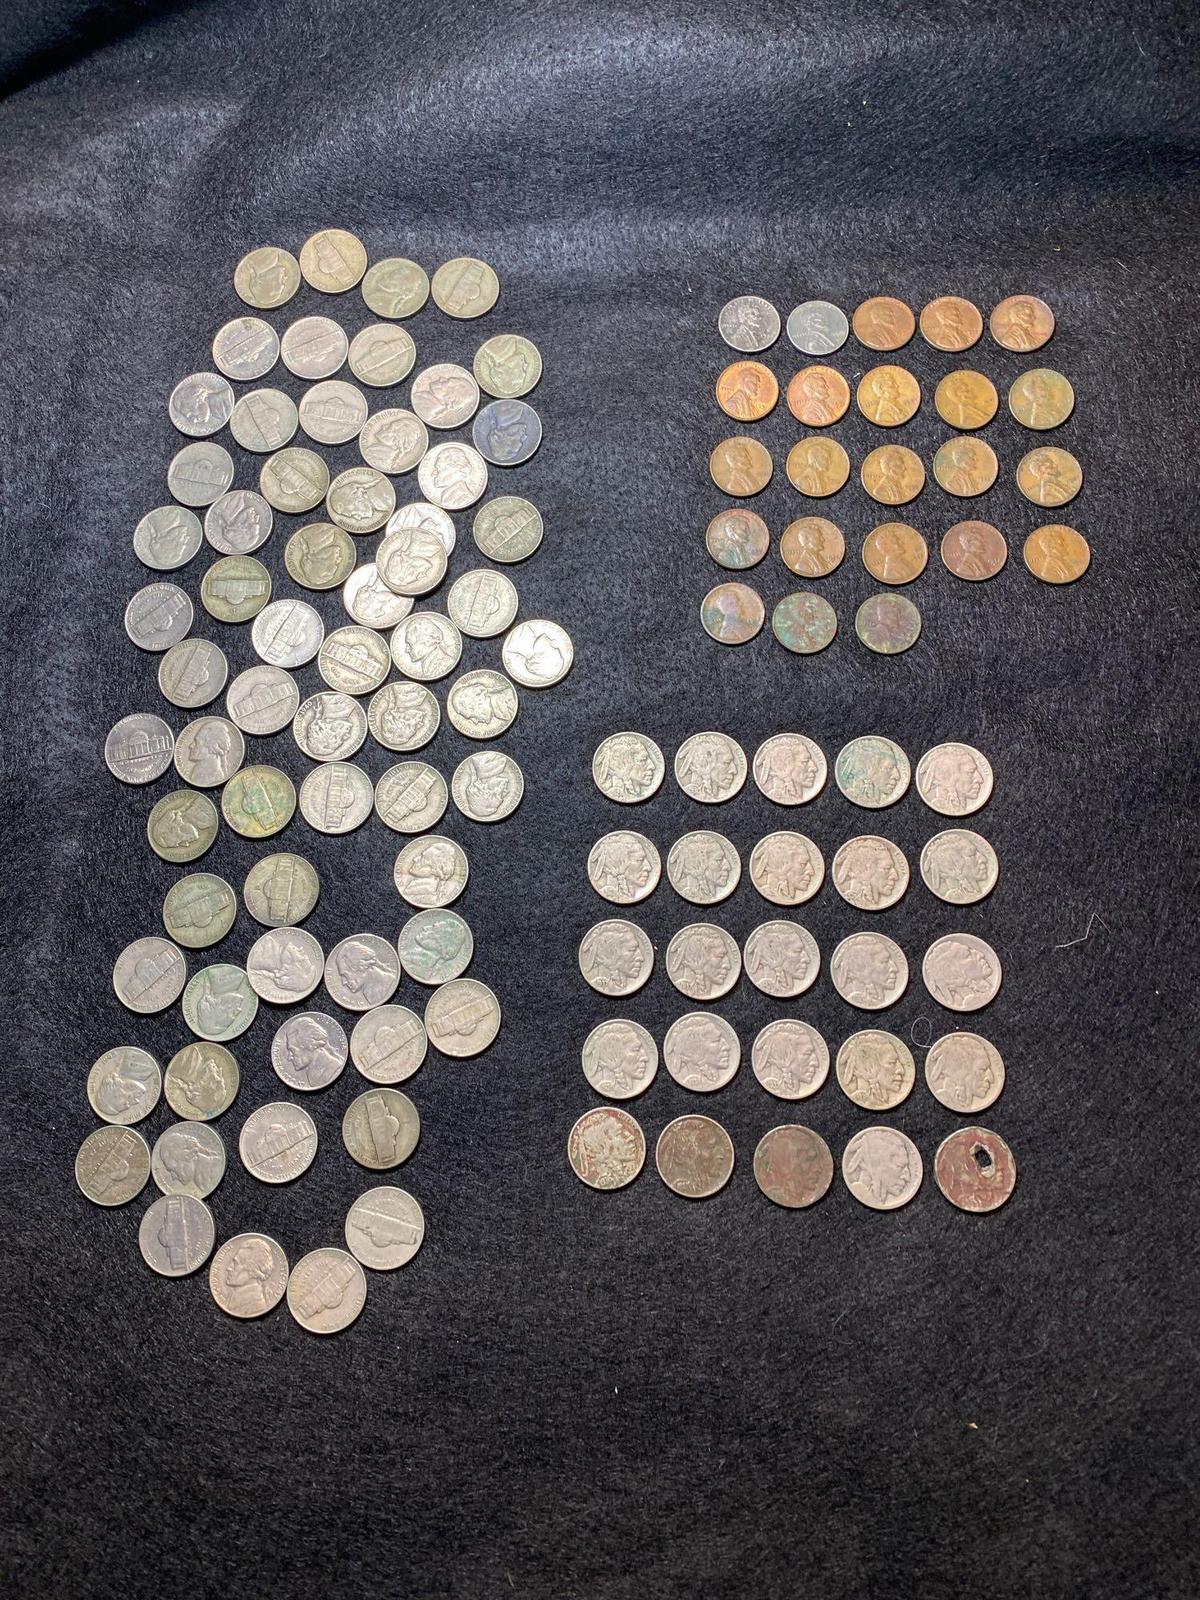 (25) Buffalo & (68) Jefferson nickels & (23) Wheat pennies